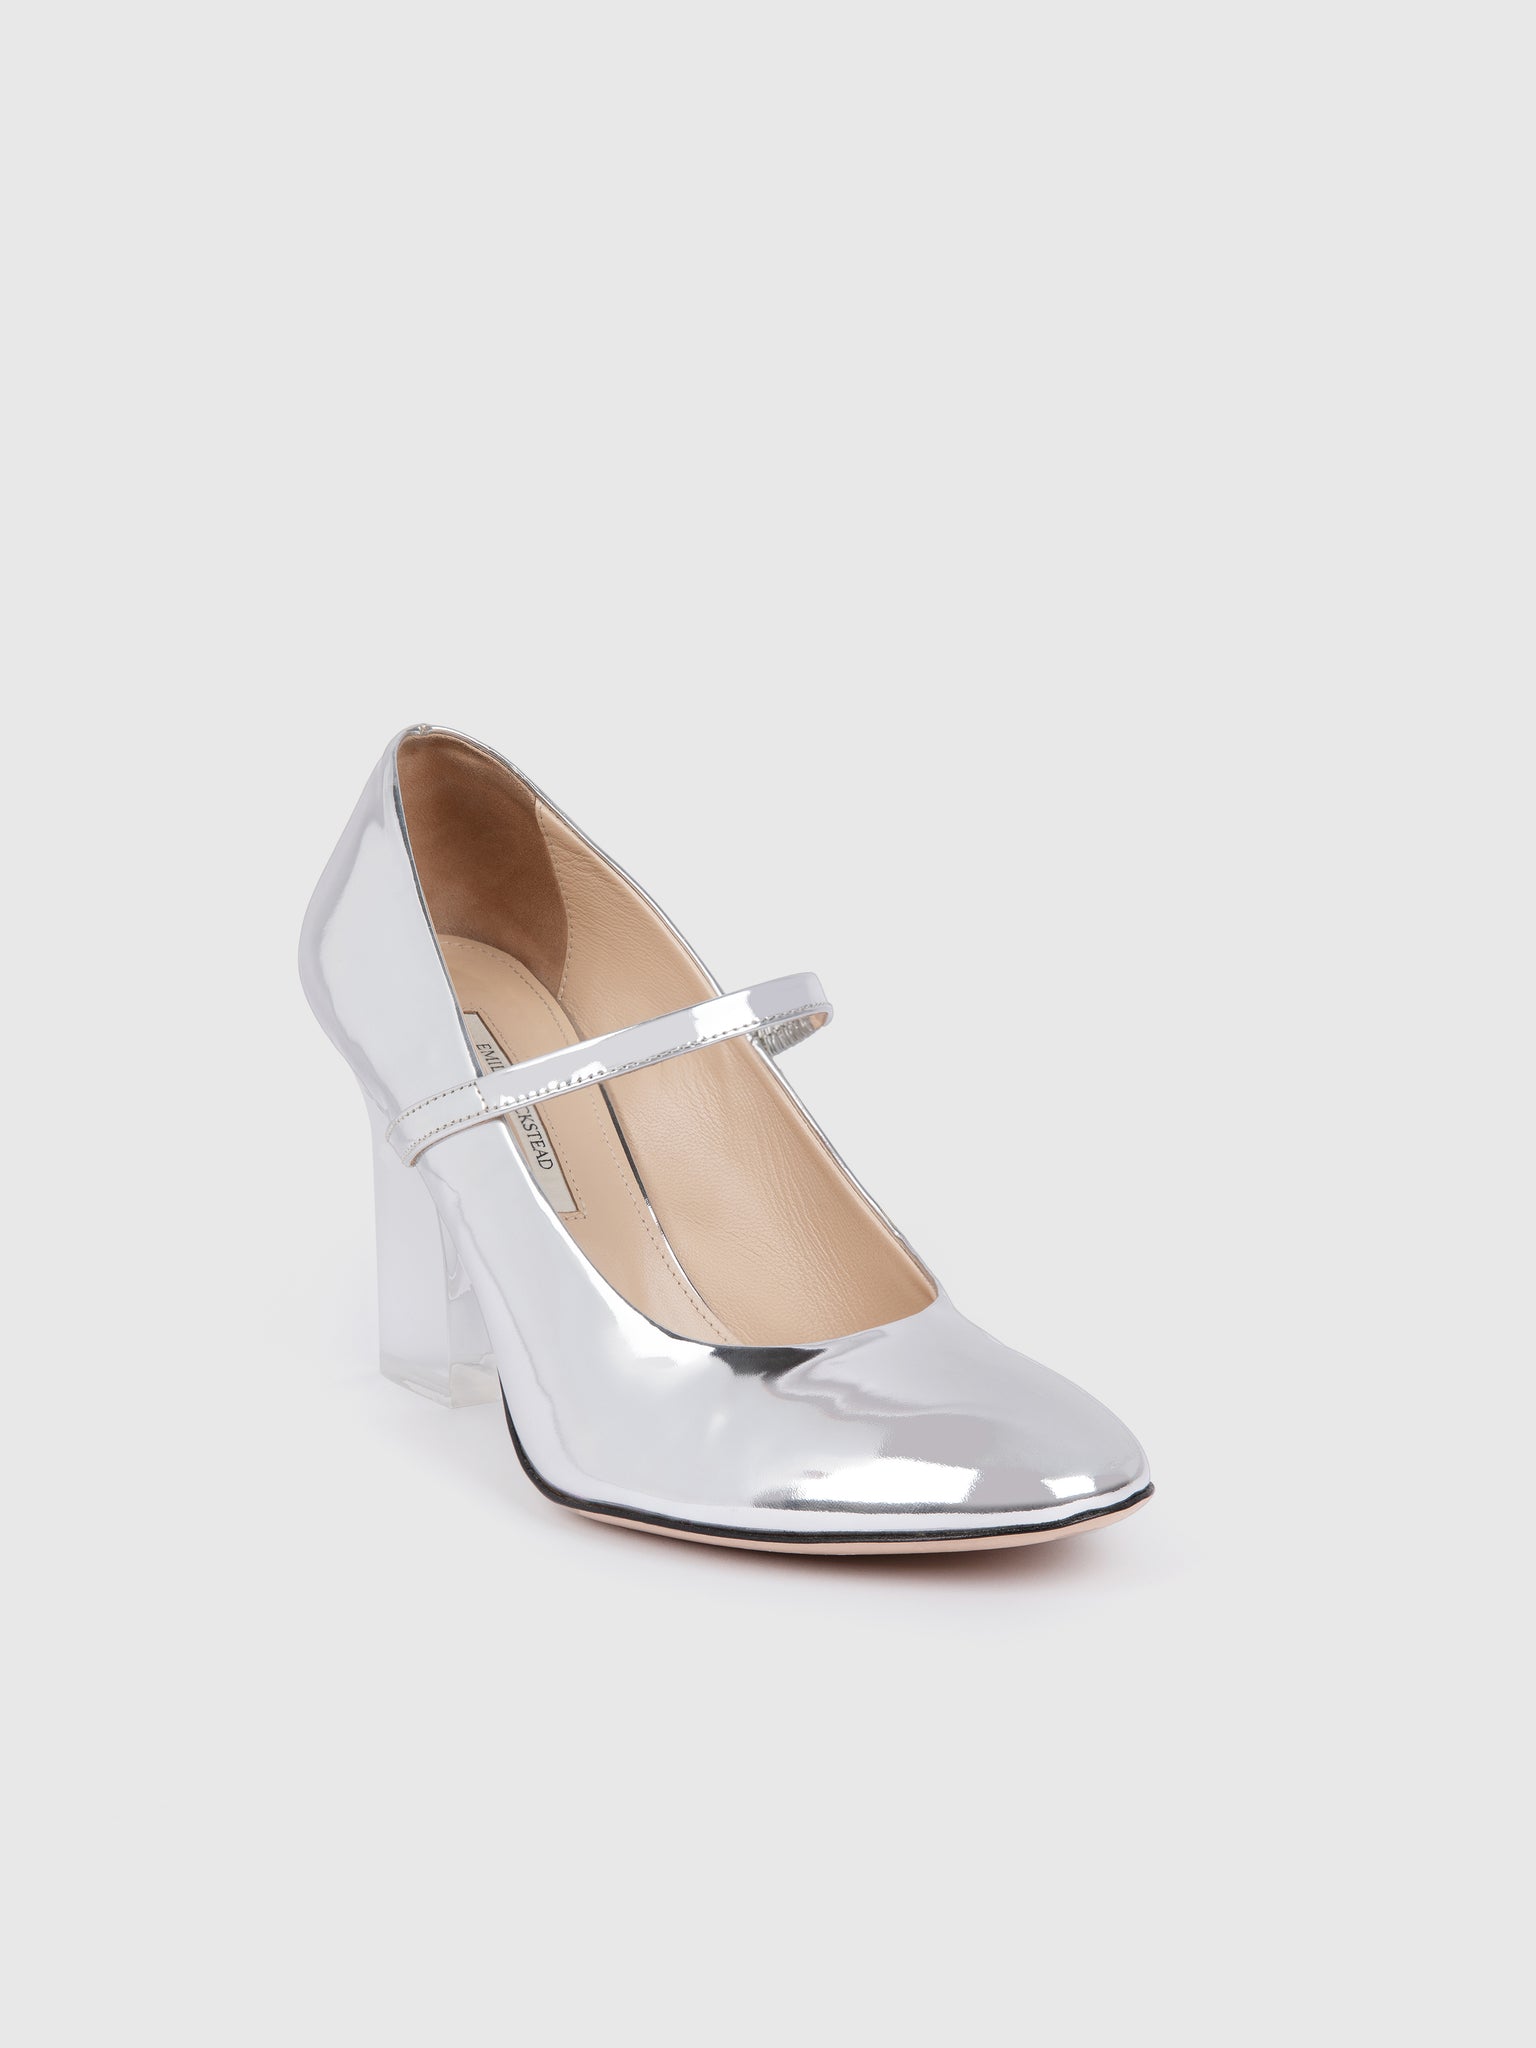 Orelia Plexi Glass Heel | Metallic Silver Mary-Jane with Plexi-Glass Heel | Emilia Wickstead